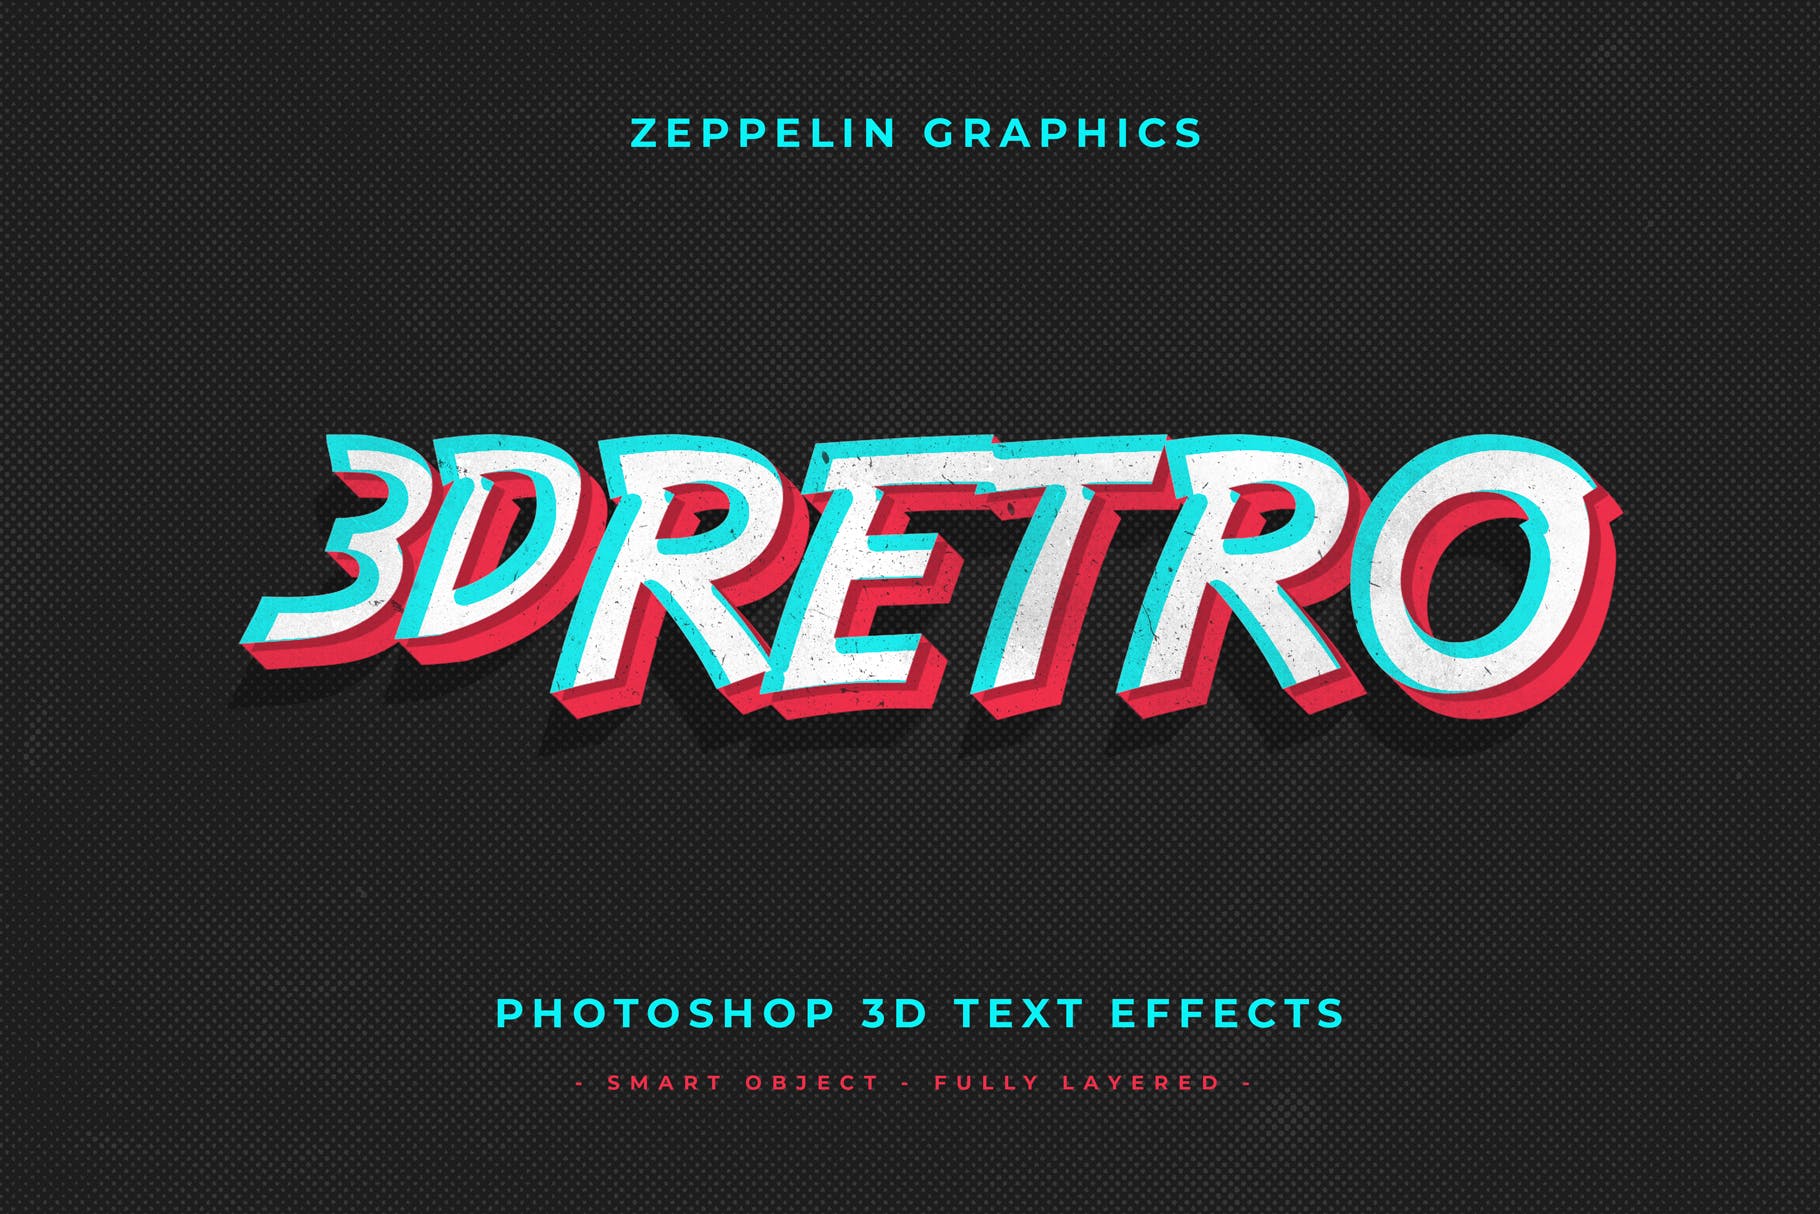 复古设计风格3D立体字体样式PSD分层模板v7 Vintage Text Effects Vol.7插图(9)